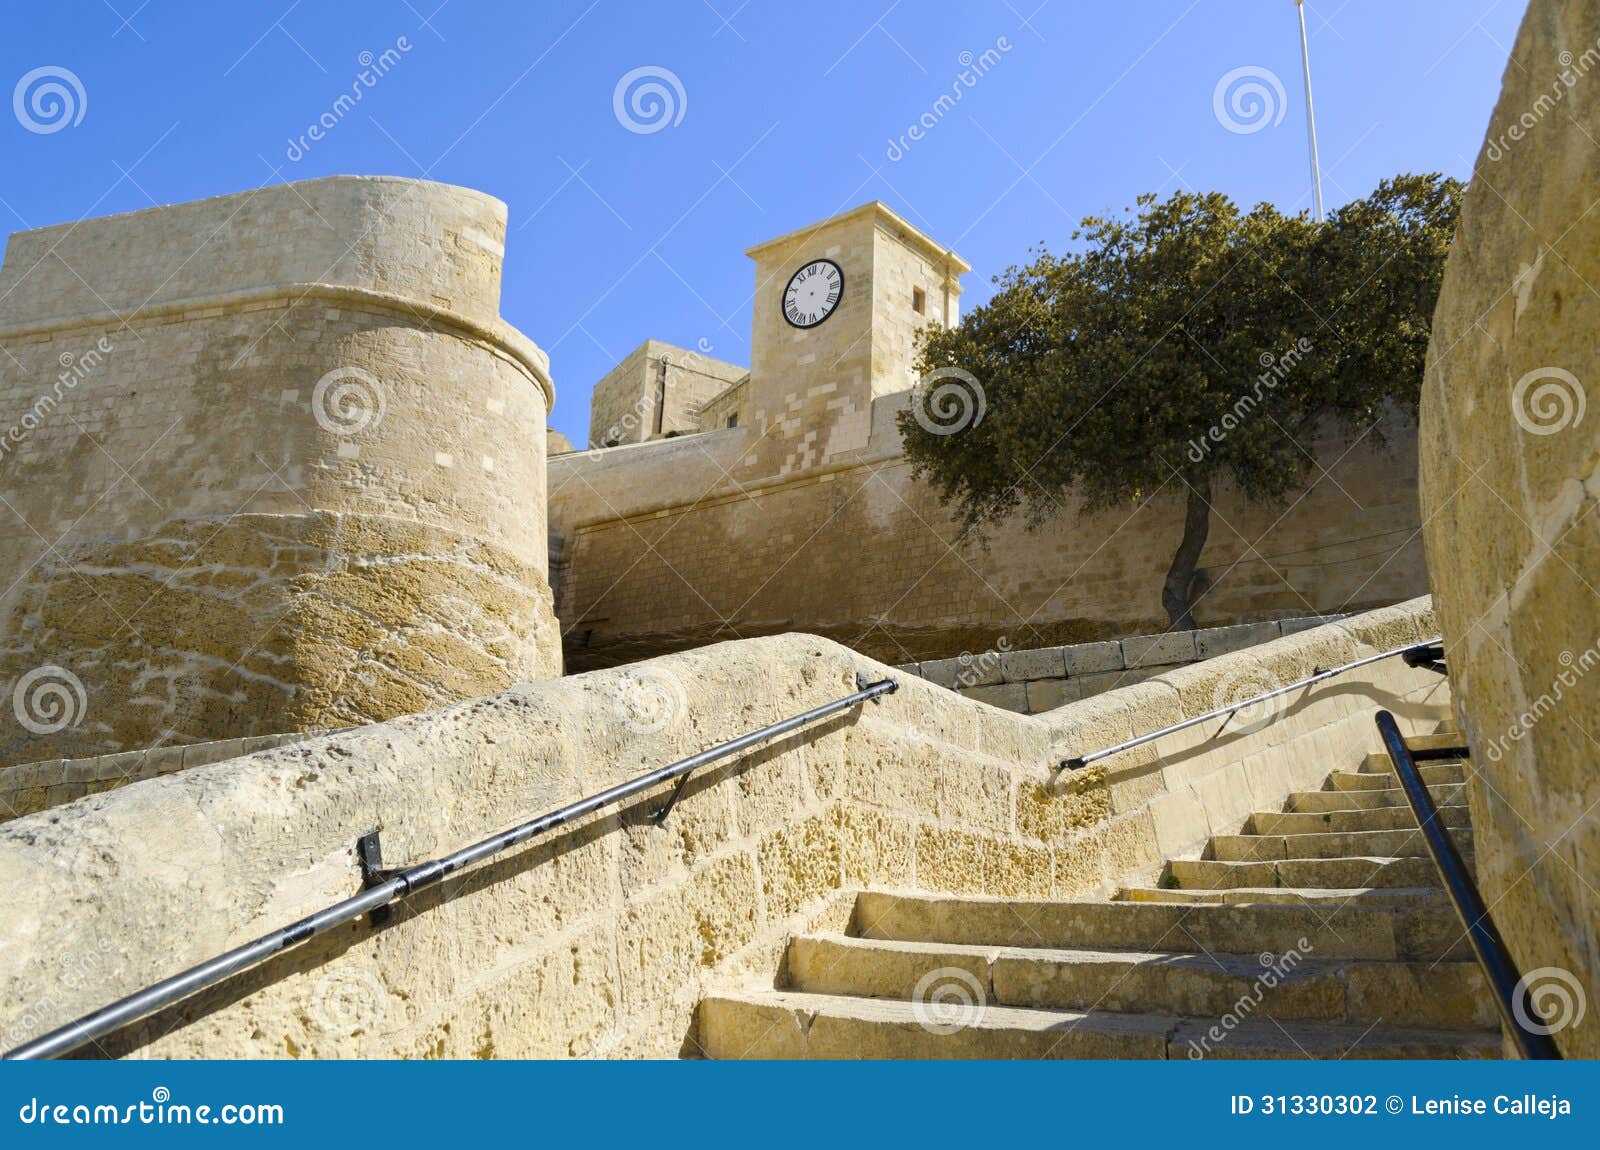 the walls of cittadella in gozo - malta